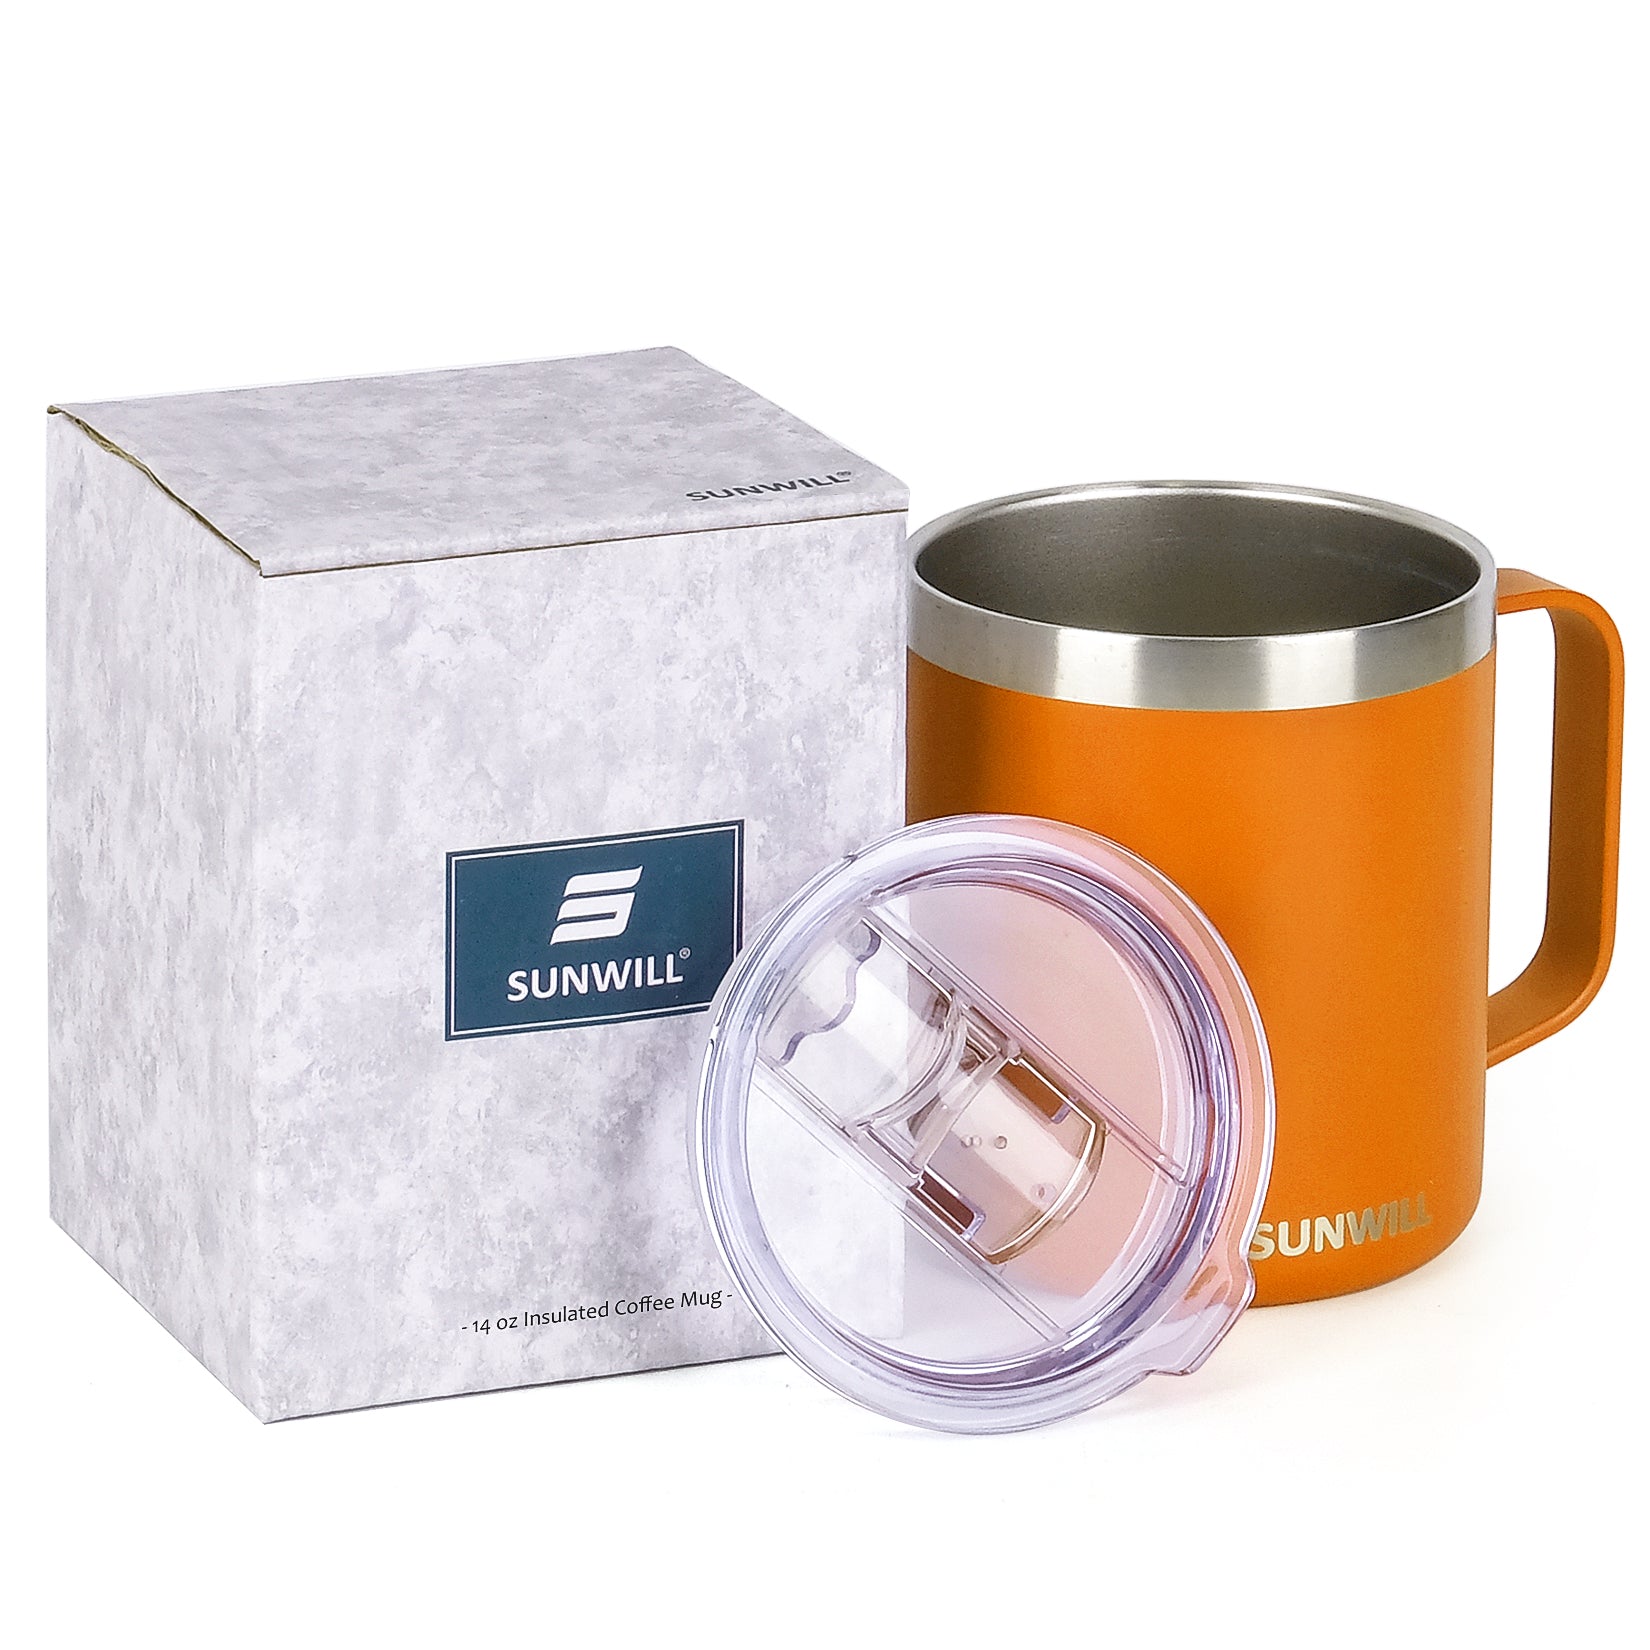 24oz Coffee Travel Mug With Sliding Lid - Powder Coated Orange